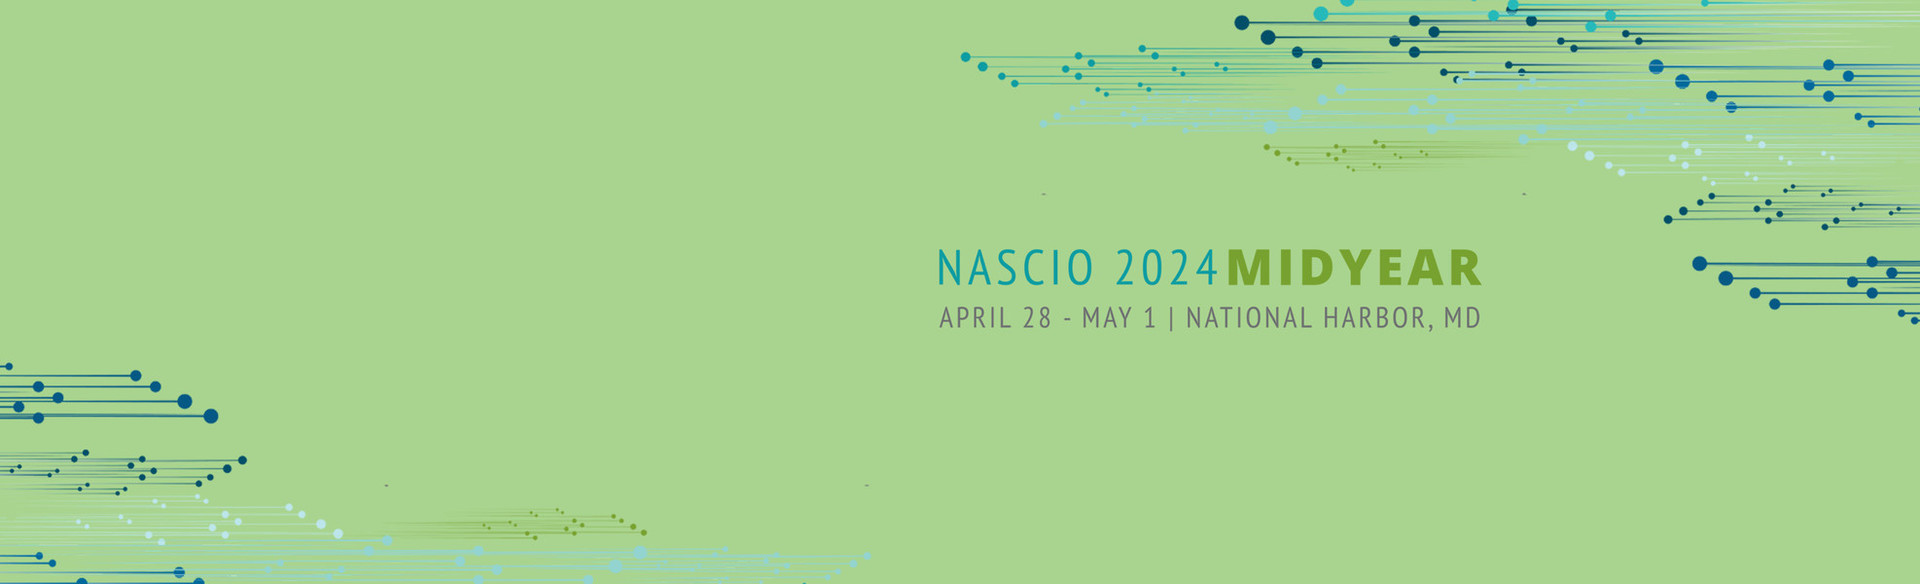 NASCIO 2024